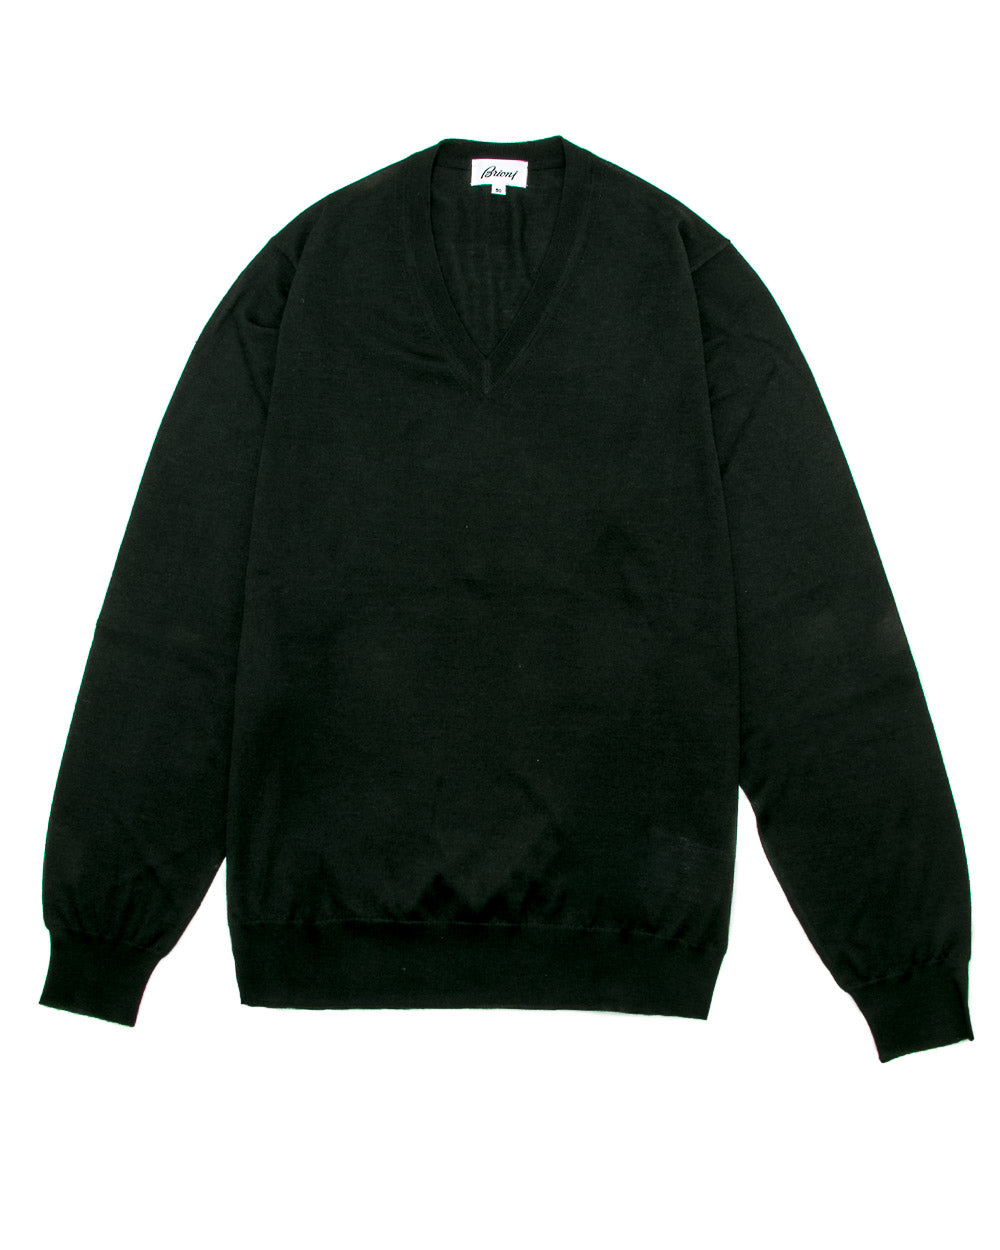 Black V-Neck Knit Sweater